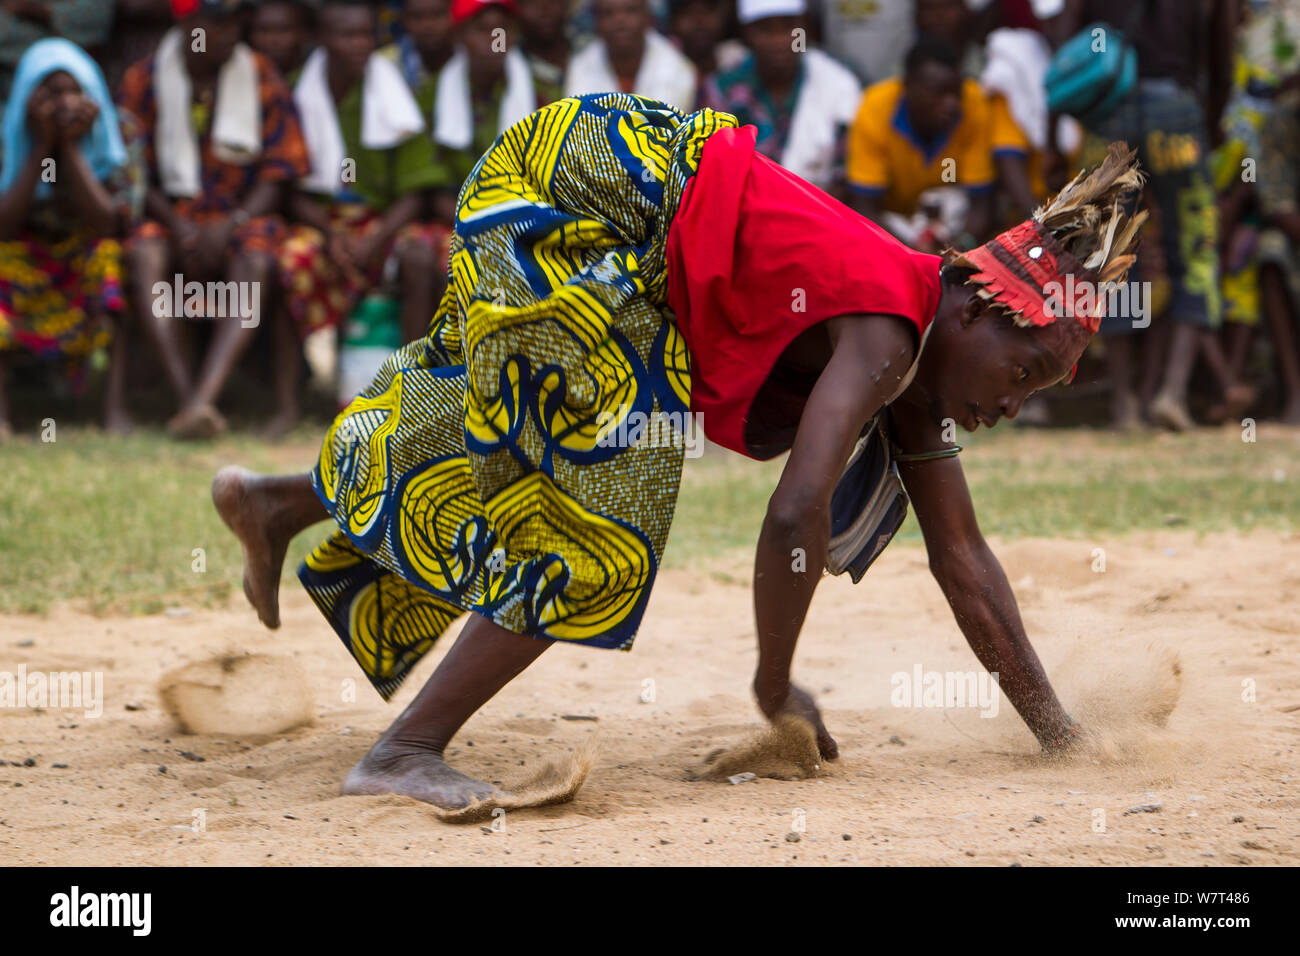 Man dancing during Zangbeto voodoo ceremony, Benin, Africa, February 2011. Stock Photo